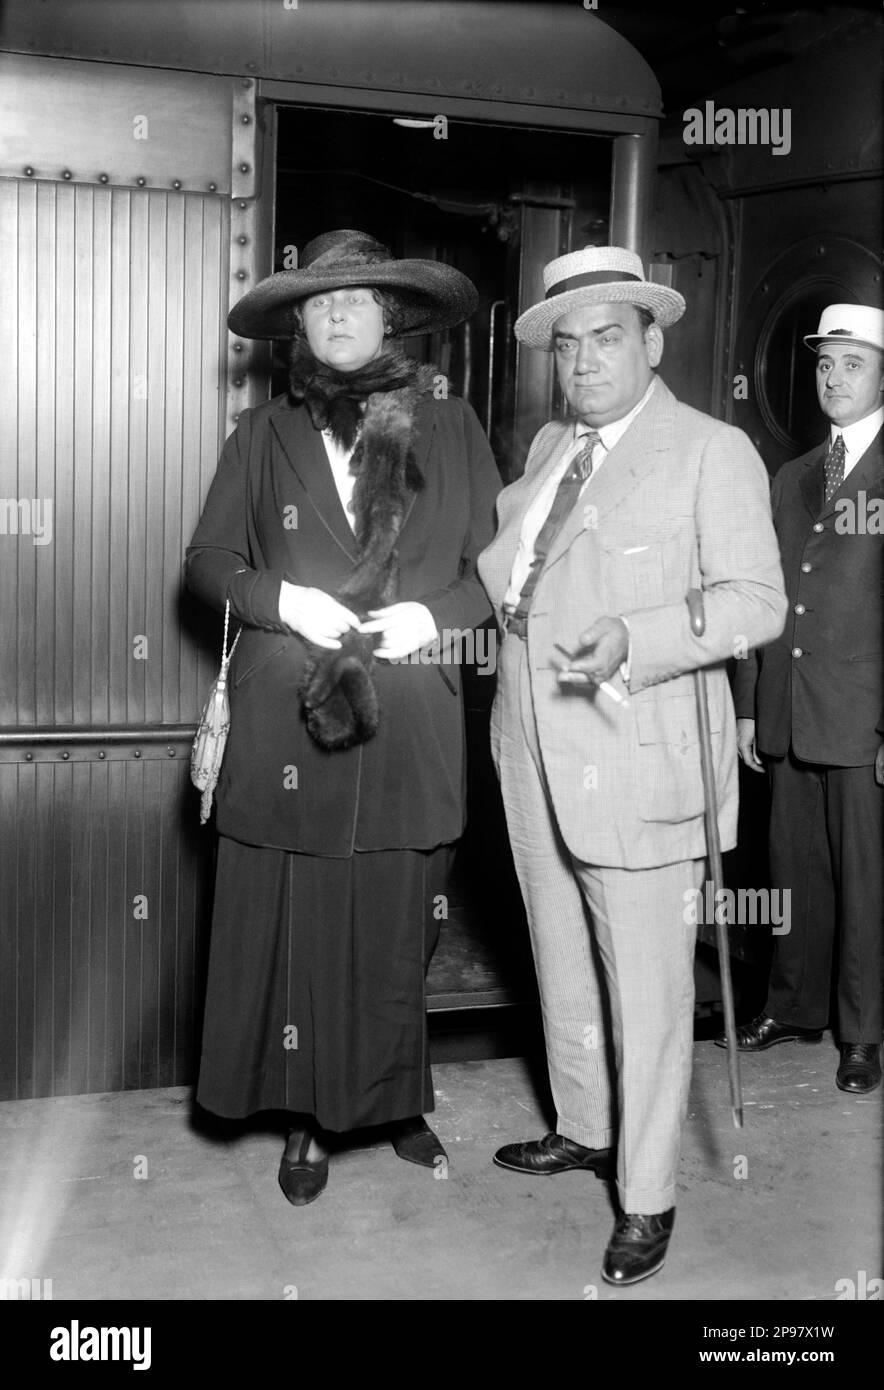 1919 Ca, Nueva York, Estados Unidos: El cantante de ópera italiano tenore ENRICO CARUSO (Napoli 1873 - 1921) en la estación central de trenes con su esposa estadounidense Dorothy Benjamin 2nd (1893 - 1955), - MÚSICA CLÁSICA - CLÁSICA - MÚSICA - retrato - ritratto - cappello - sombrero - corbata - corbata - corbata - TENORE - ÓPERA LIRICA - TEATRO - - piel - película - marito e moglie - paglietta - bastone da passeggio - caña ---- Archivio GBB Foto de stock